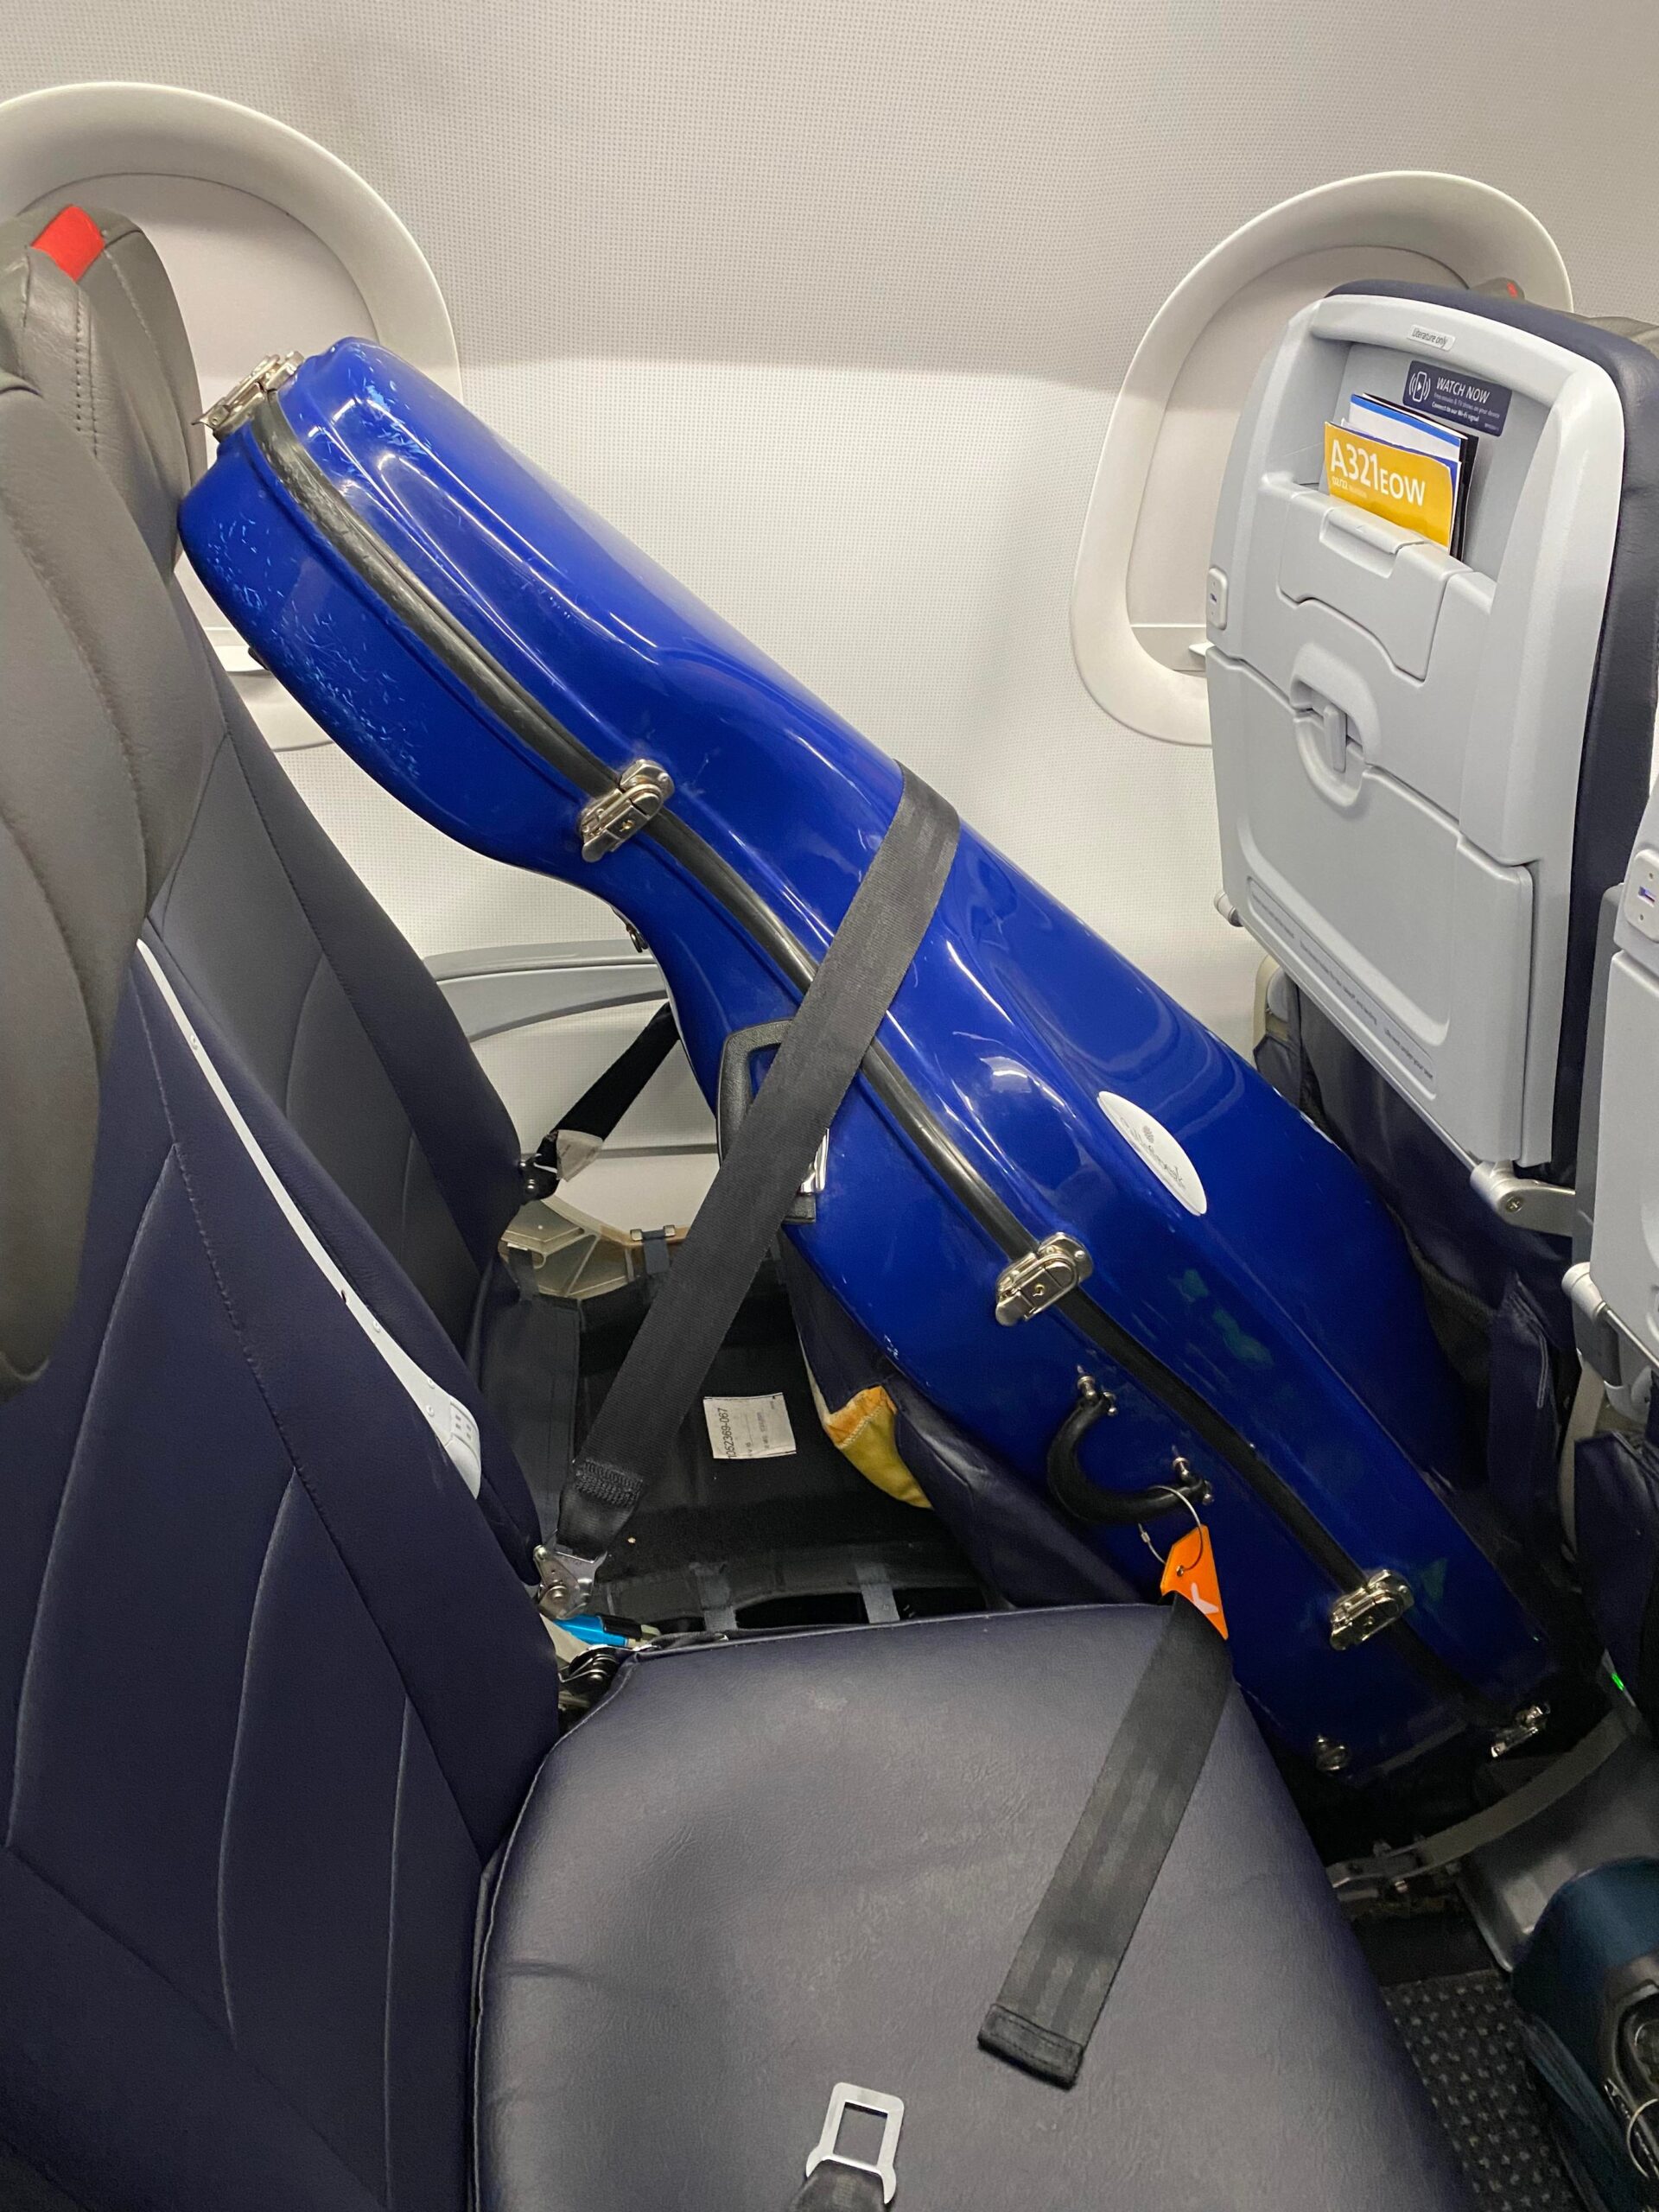 Cello on an airplane seat